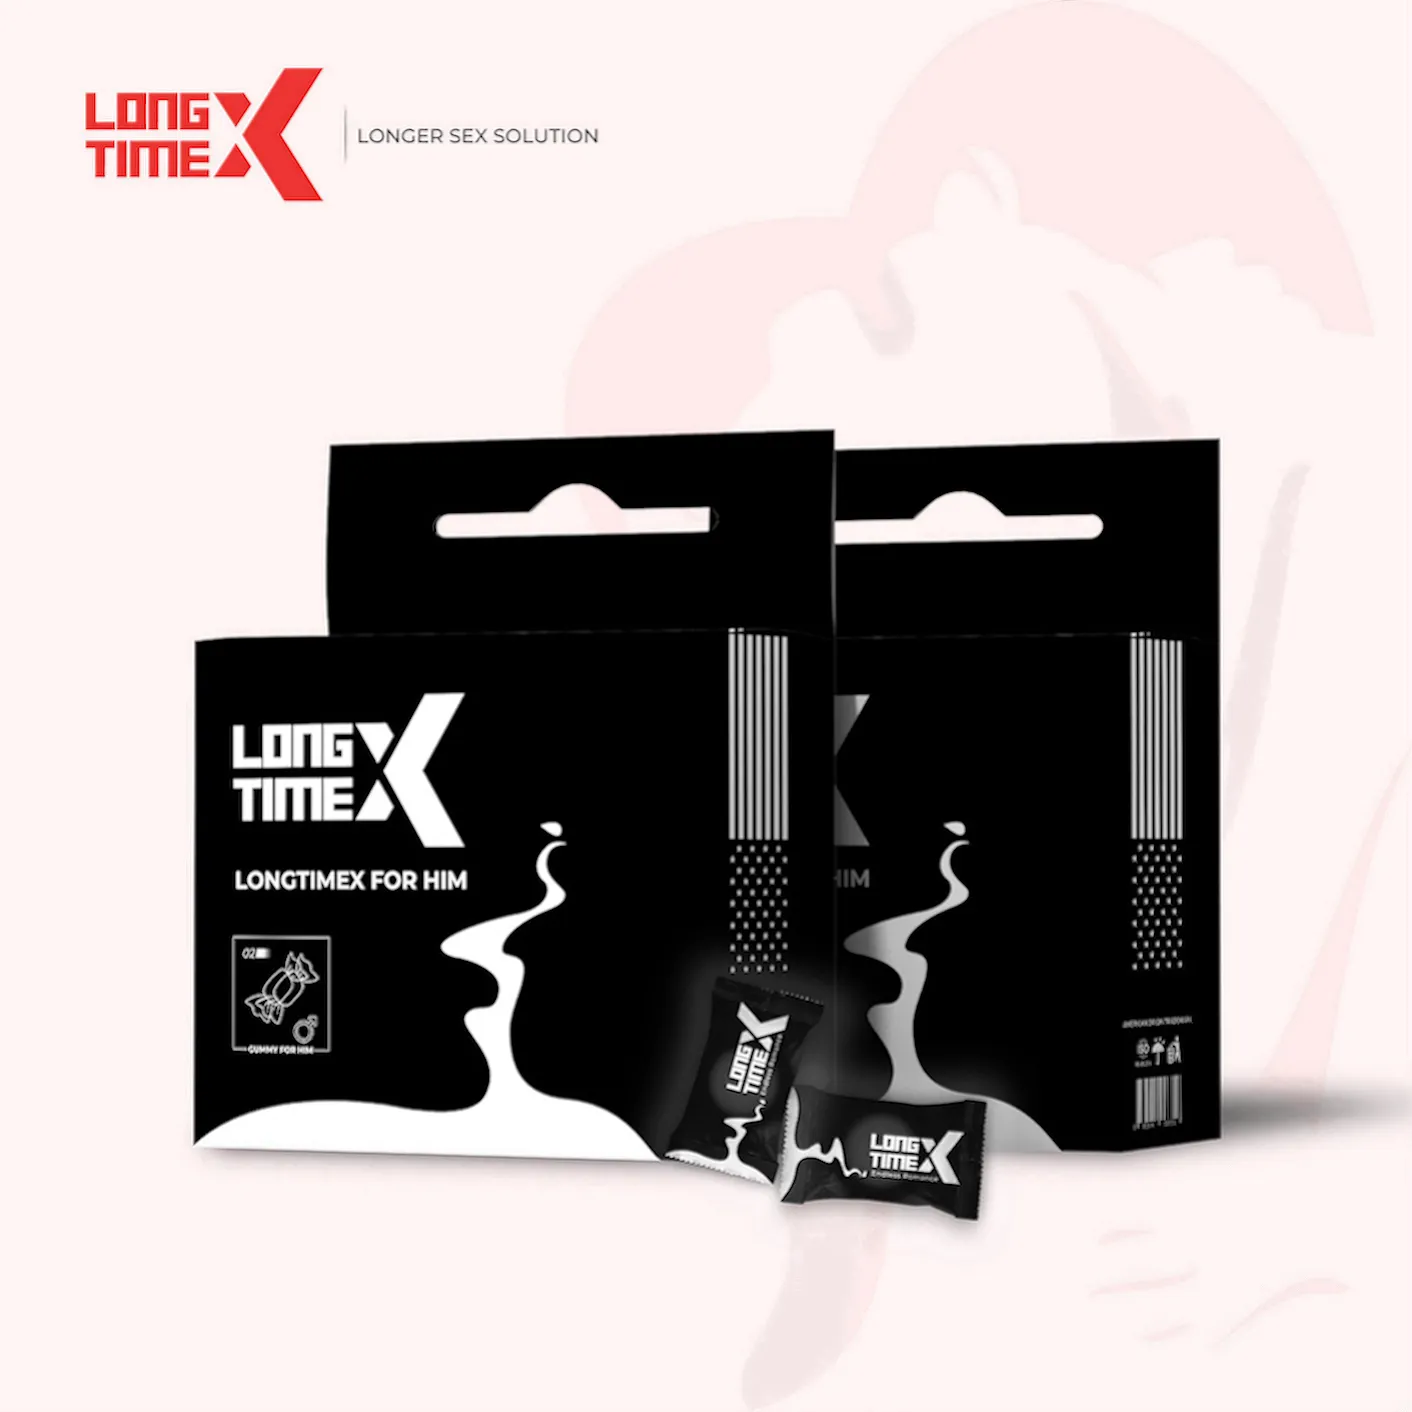 LongtimeX 20 gummiartige Top-Performance-Problem lösungs produkte ergänzen Gesundheit besten Waren männliche Verbesserung Pillen Mann Sexspielzeug